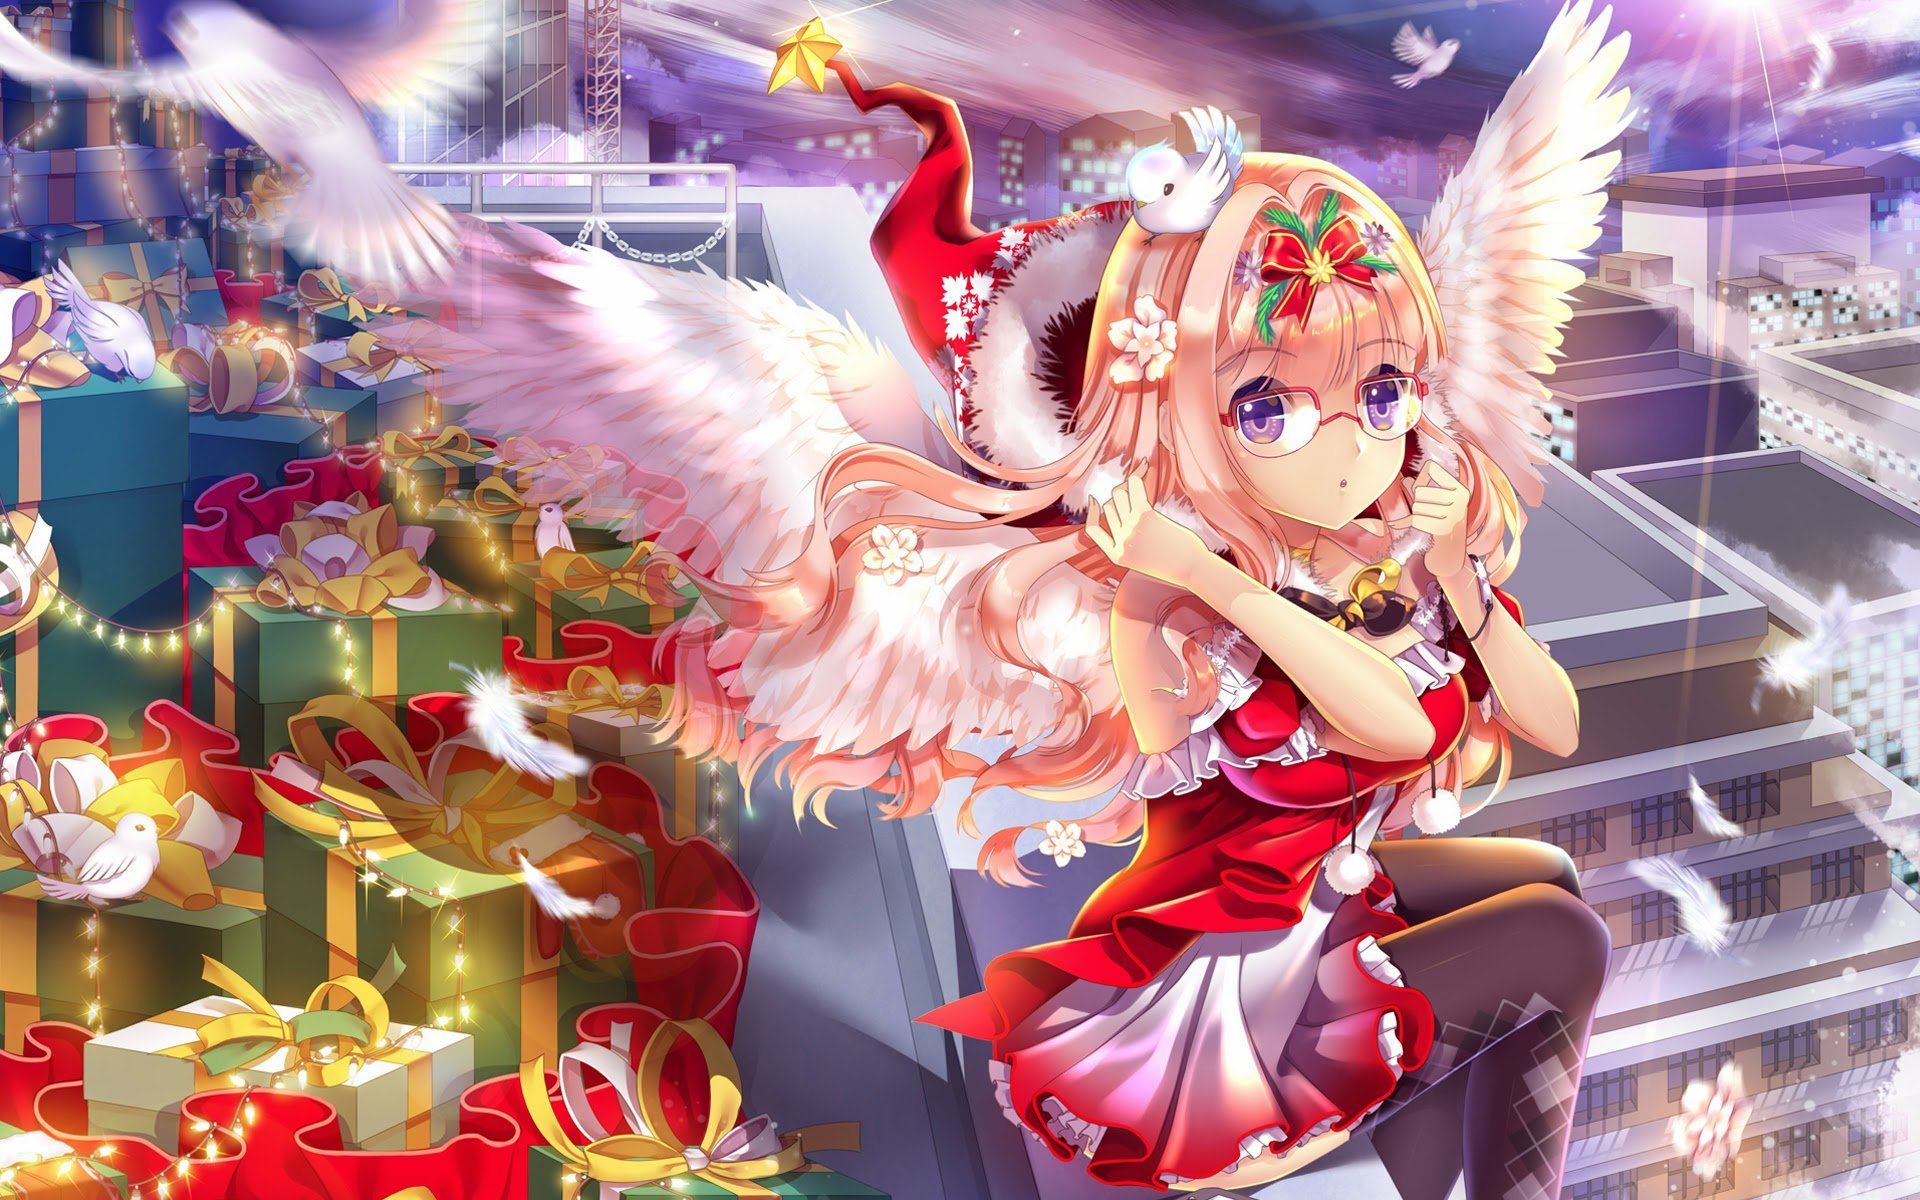 Mùa Giáng Sinh đang đến rất gần, bạn đã sẵn sàng cho những hình nền Giáng Sinh anime đáng yêu chưa? Tham khảo bộ sưu tập hình nền anime cô gái Giáng Sinh lung linh, tươi sáng tại đây và mang lại không khí lễ hội tràn đầy niềm vui cho chính bạn.